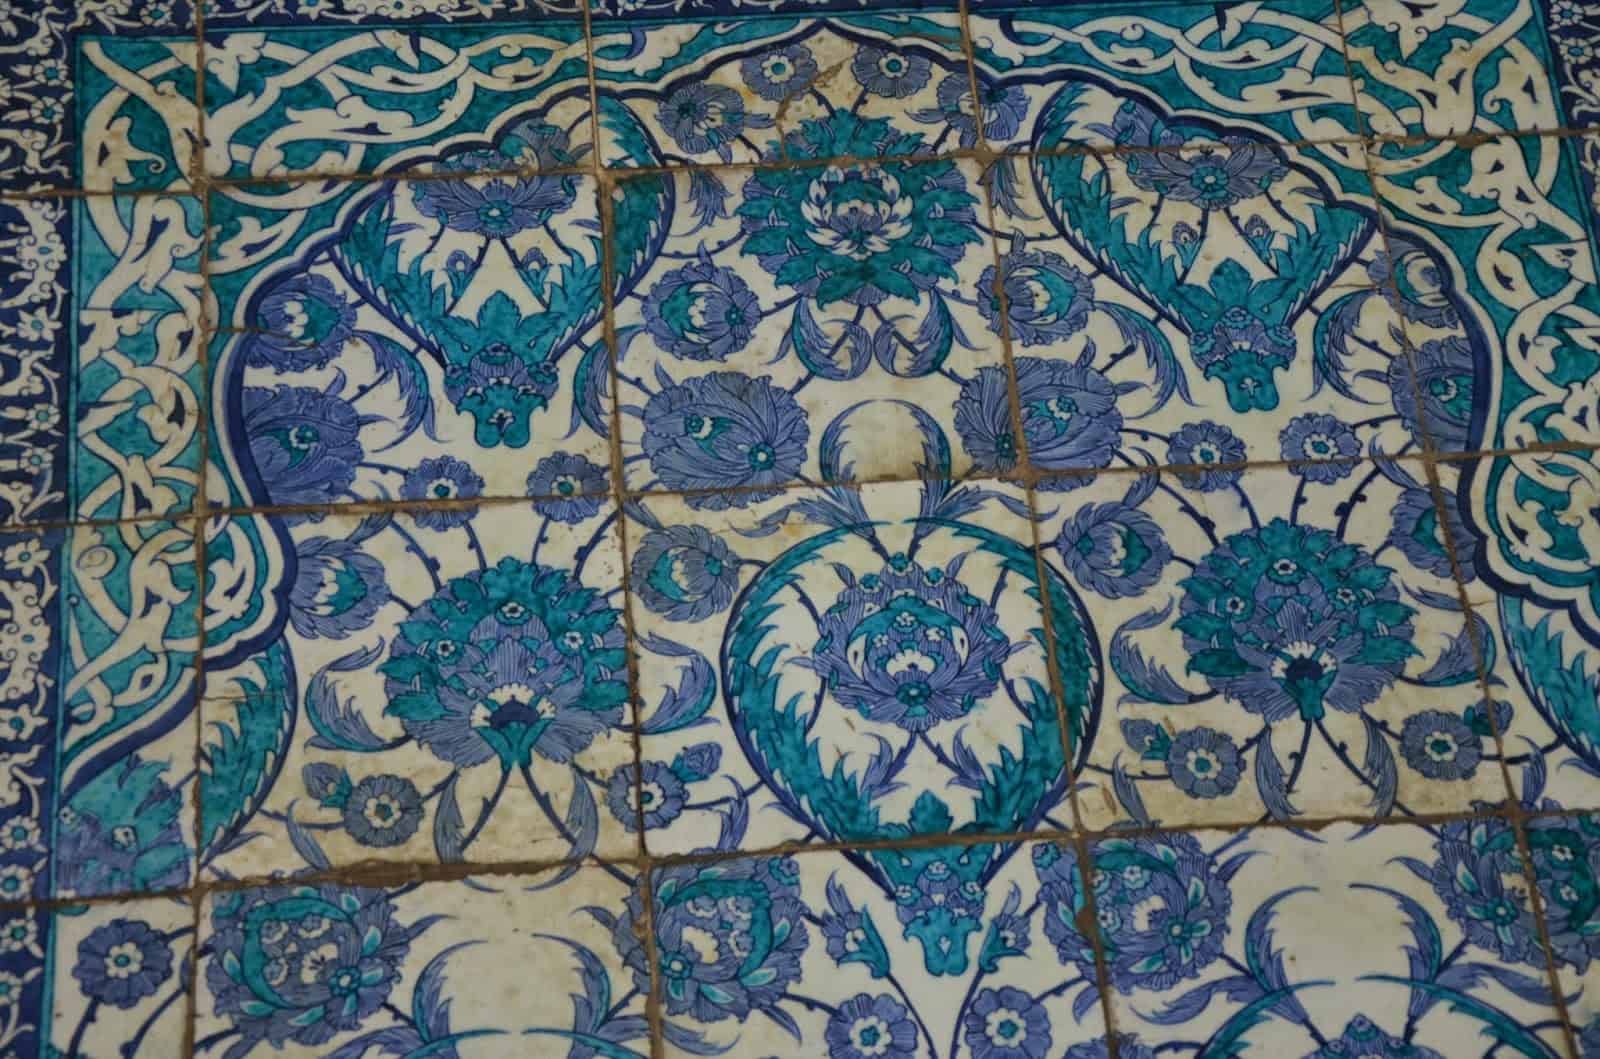 Iznik tiles in the Tiled Mosque in Üsküdar, Istanbul, Turkey